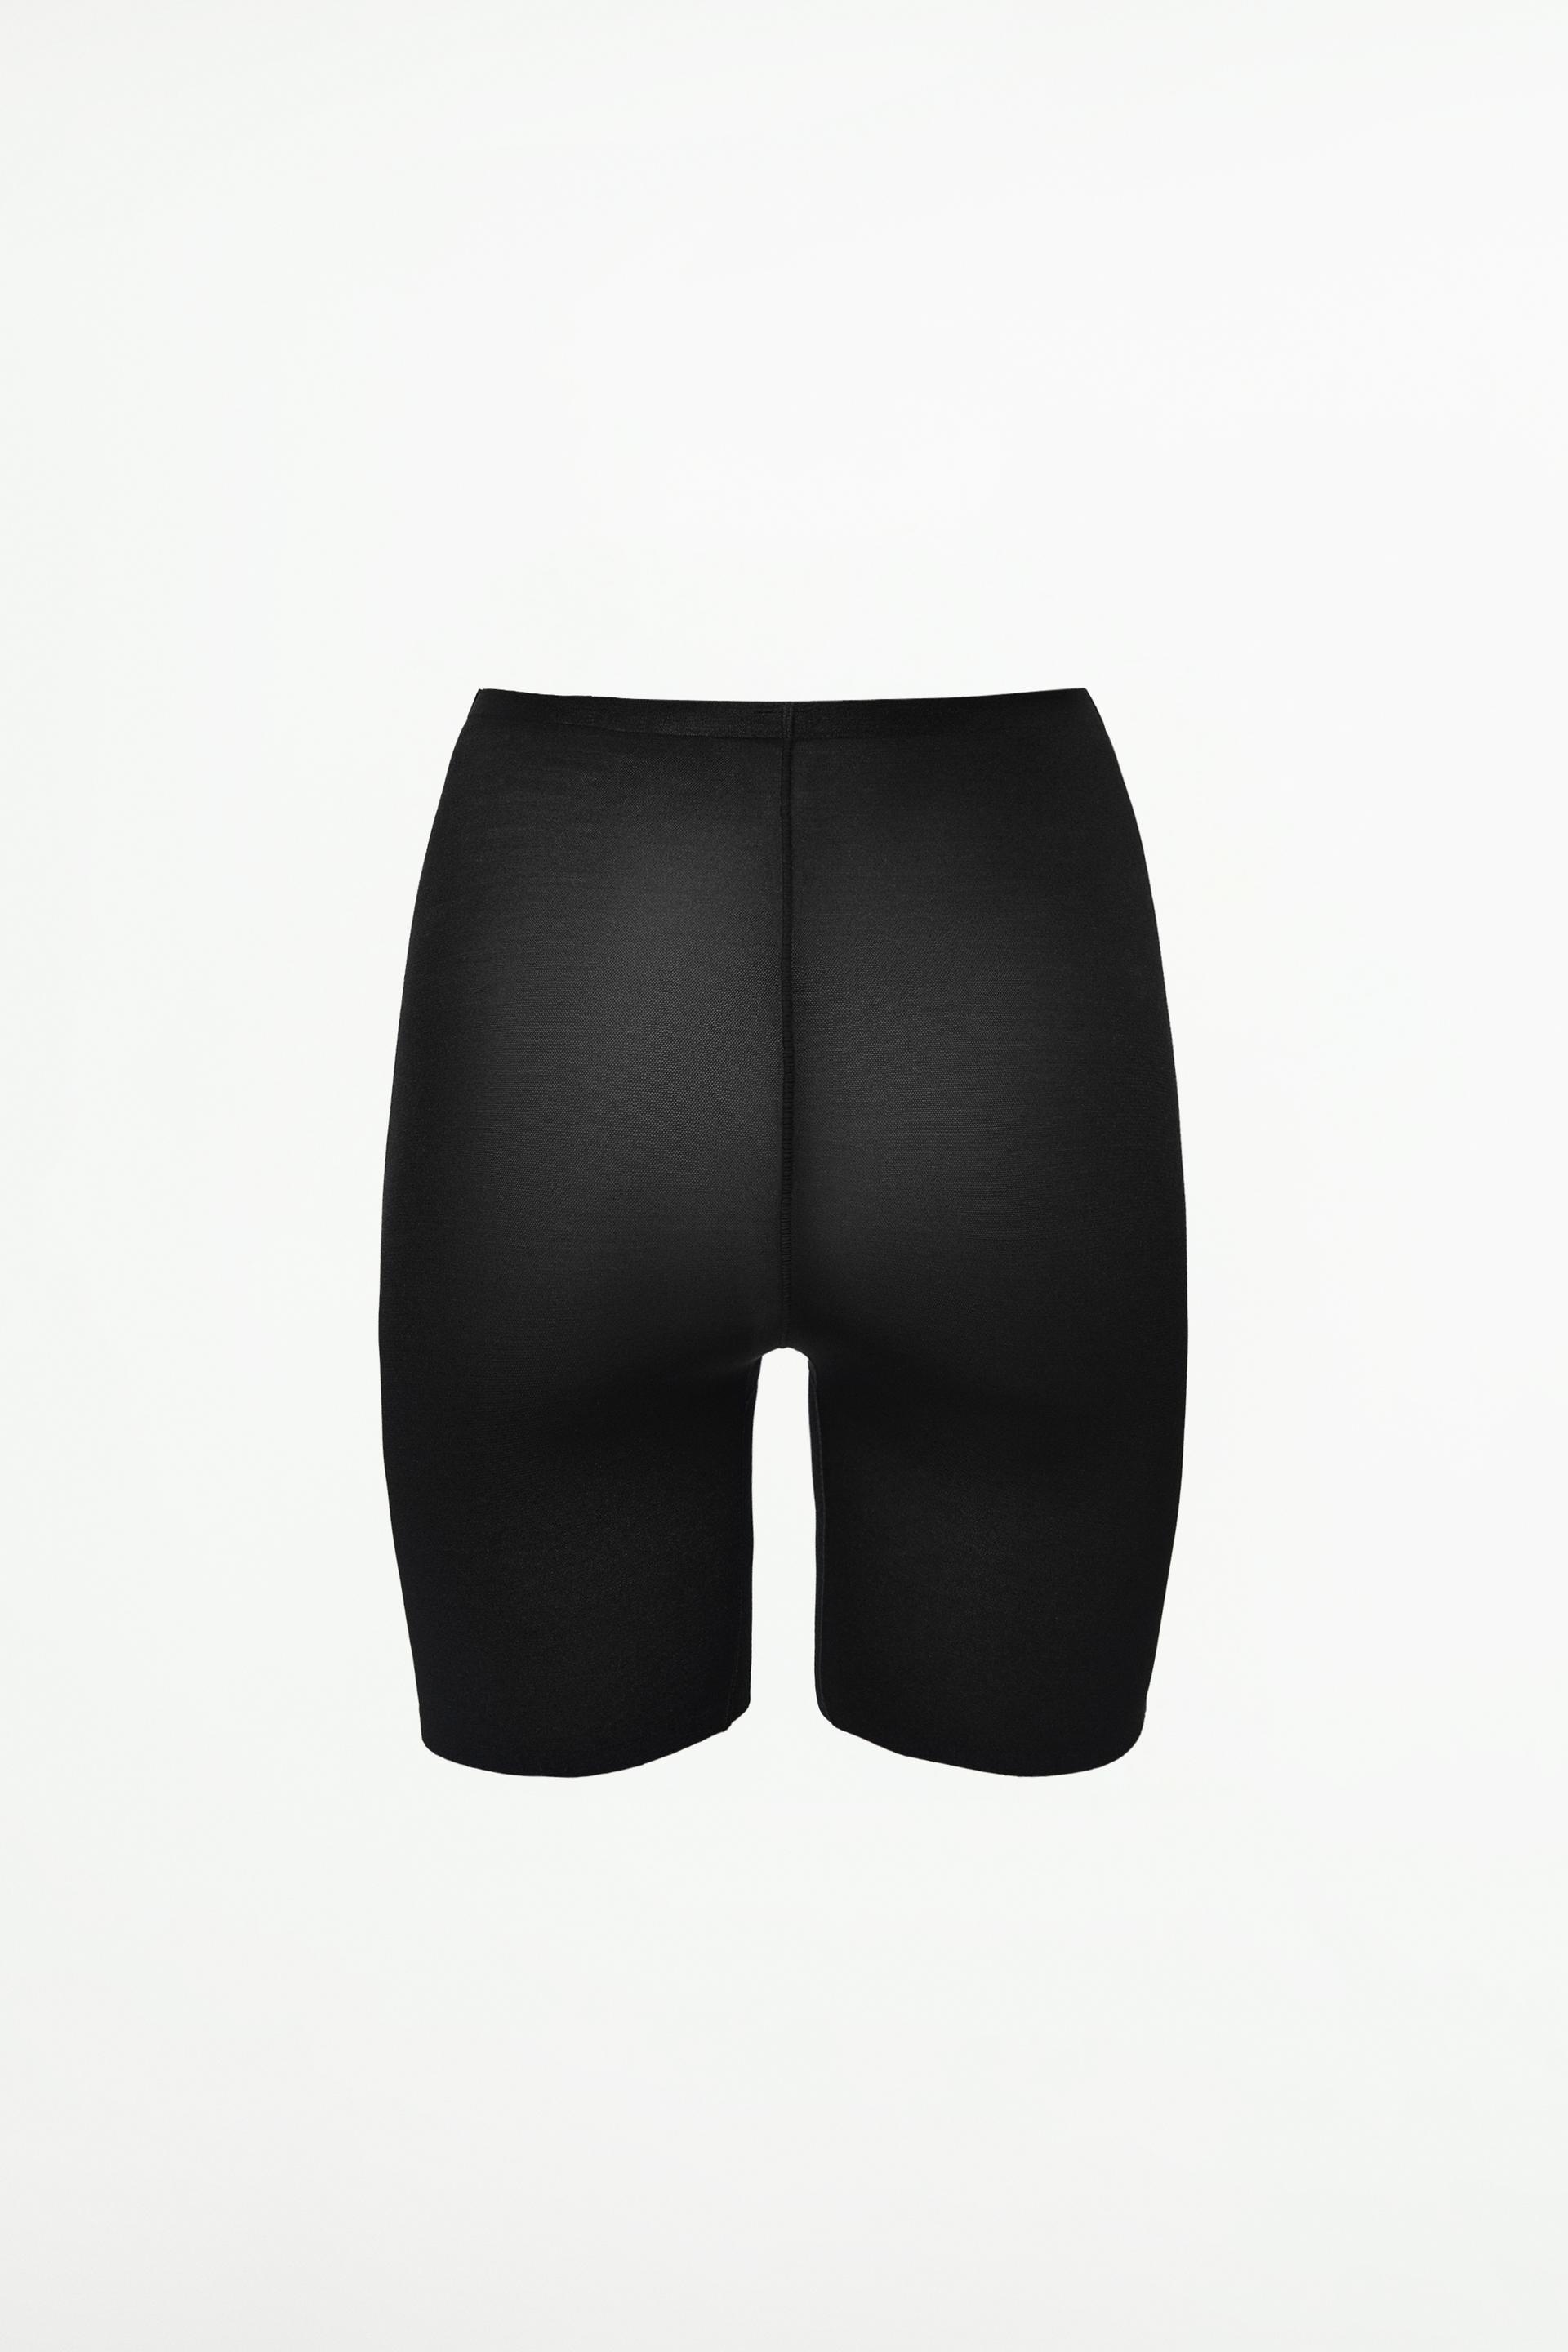 Women's InstantFigure WBSH010 Shapewear Hi-Waist Boy Shorts (Black L)